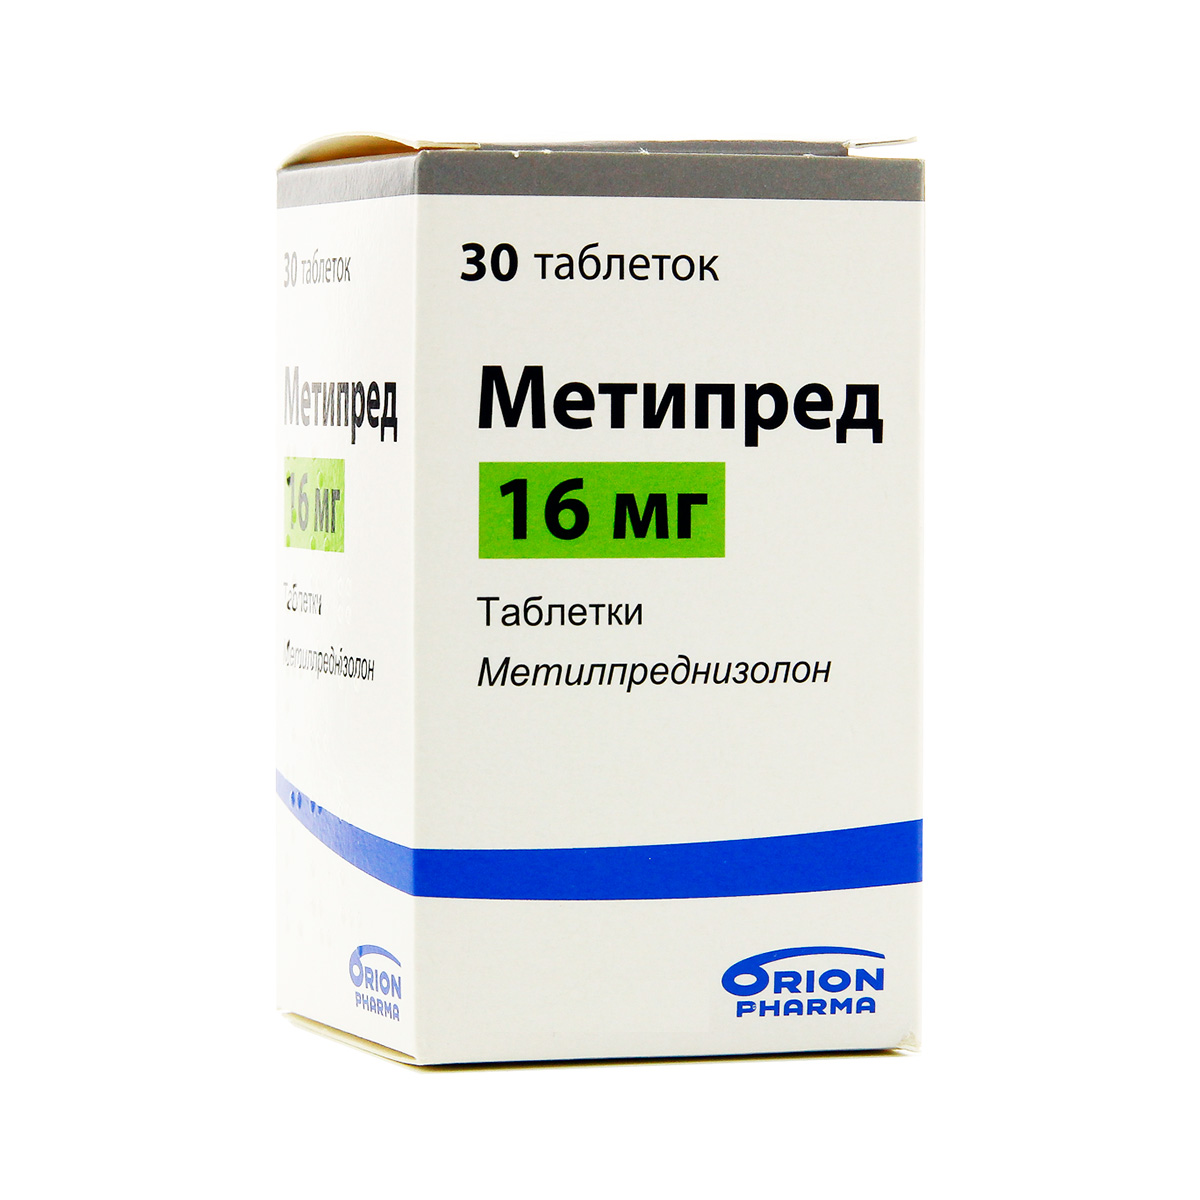 Метипред 16 мг таблетки 30 шт